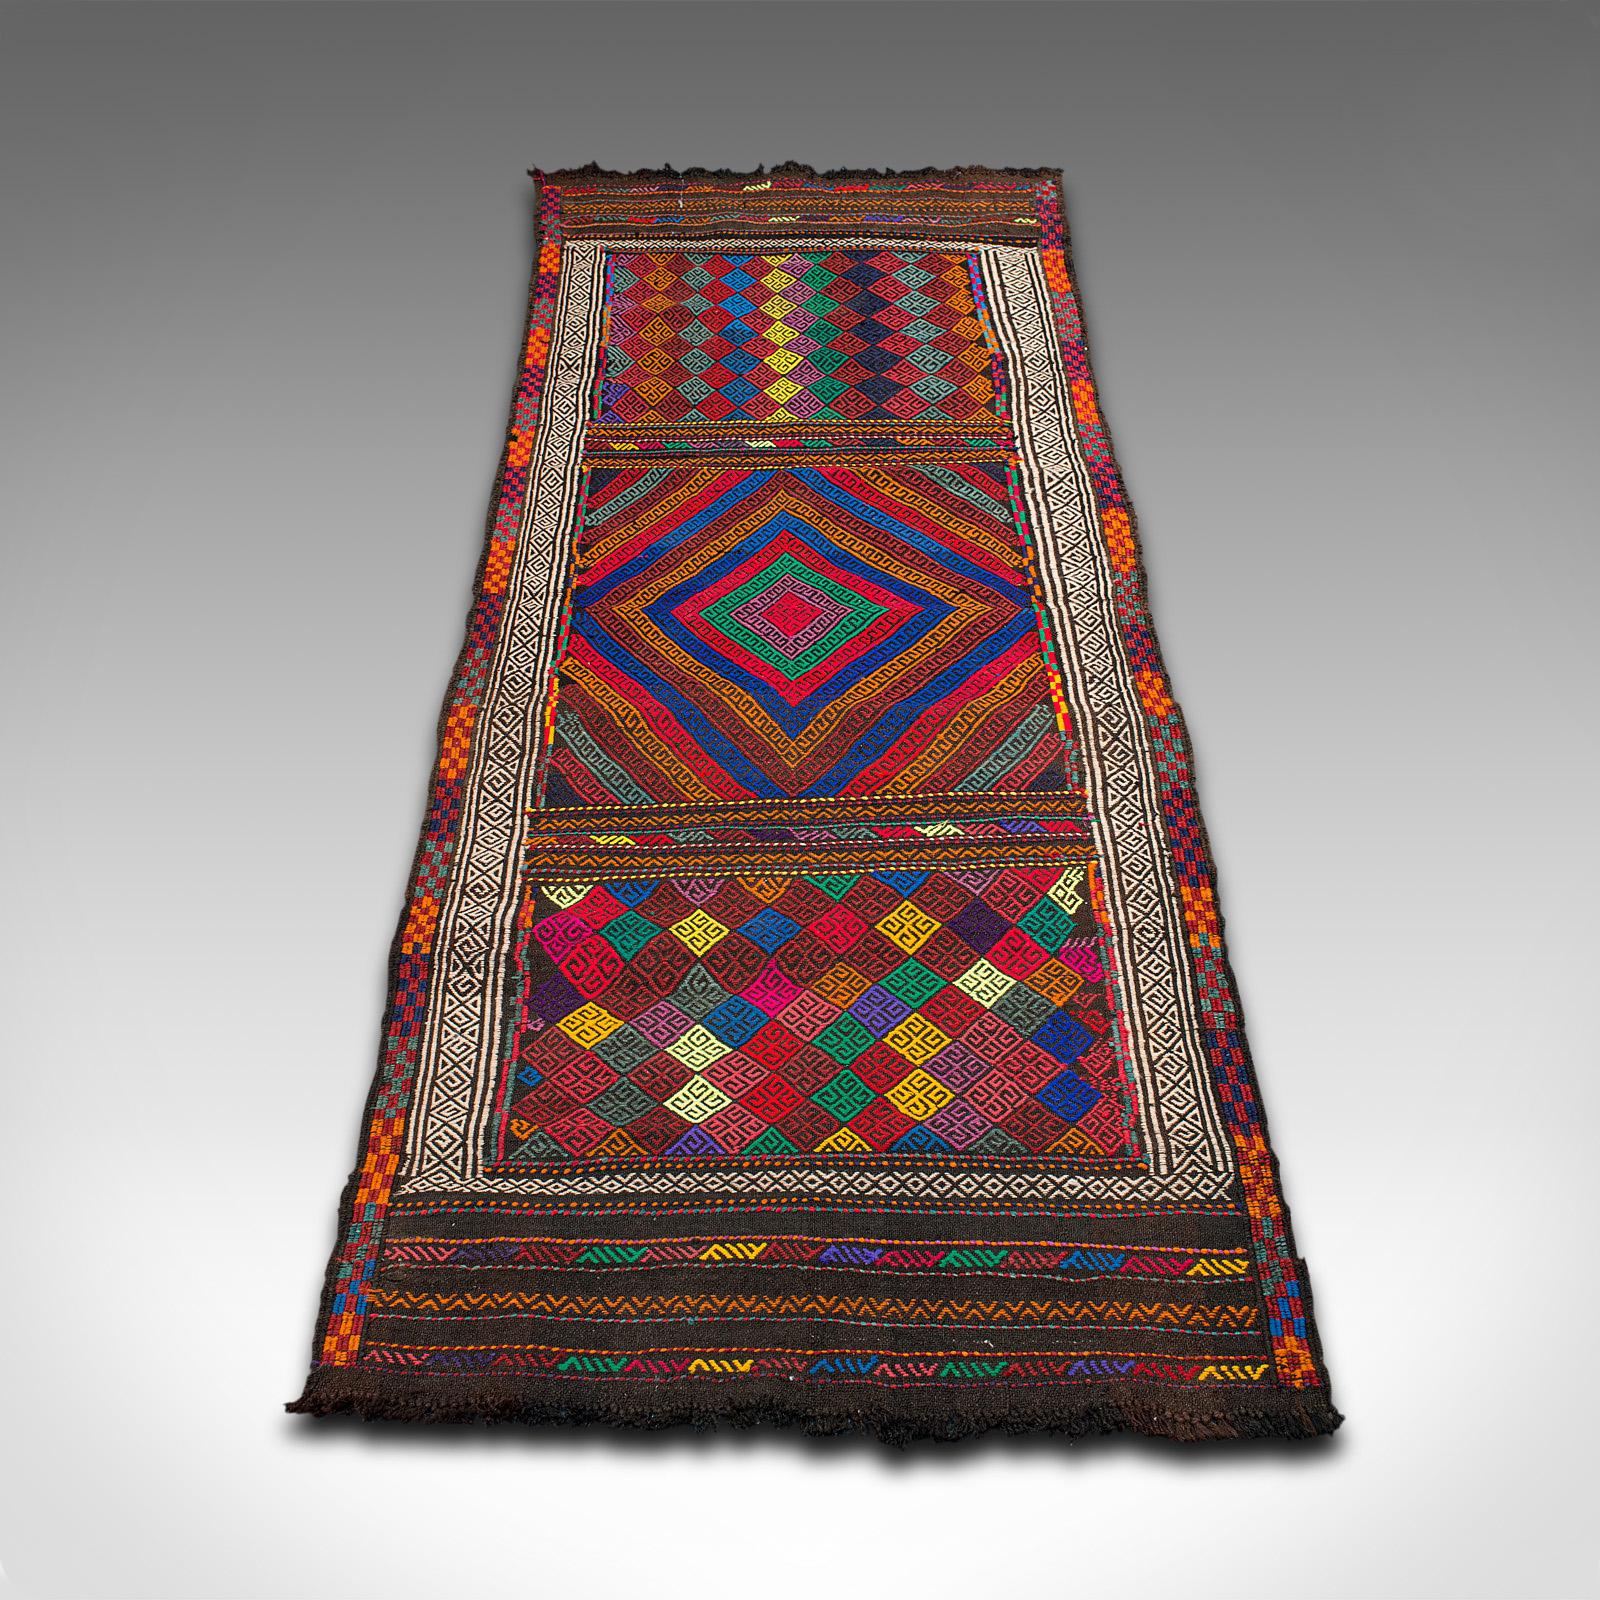 Il s'agit d'un tapis multicolore Suzani Kilim vintage. Tapis de couloir ou d'entrée tissé du Moyen-Orient, datant de la fin du 20e siècle, vers 1980.

Taille utile dans un hall d'entrée ou une baie vitrée : 79 cm x 211 cm (31